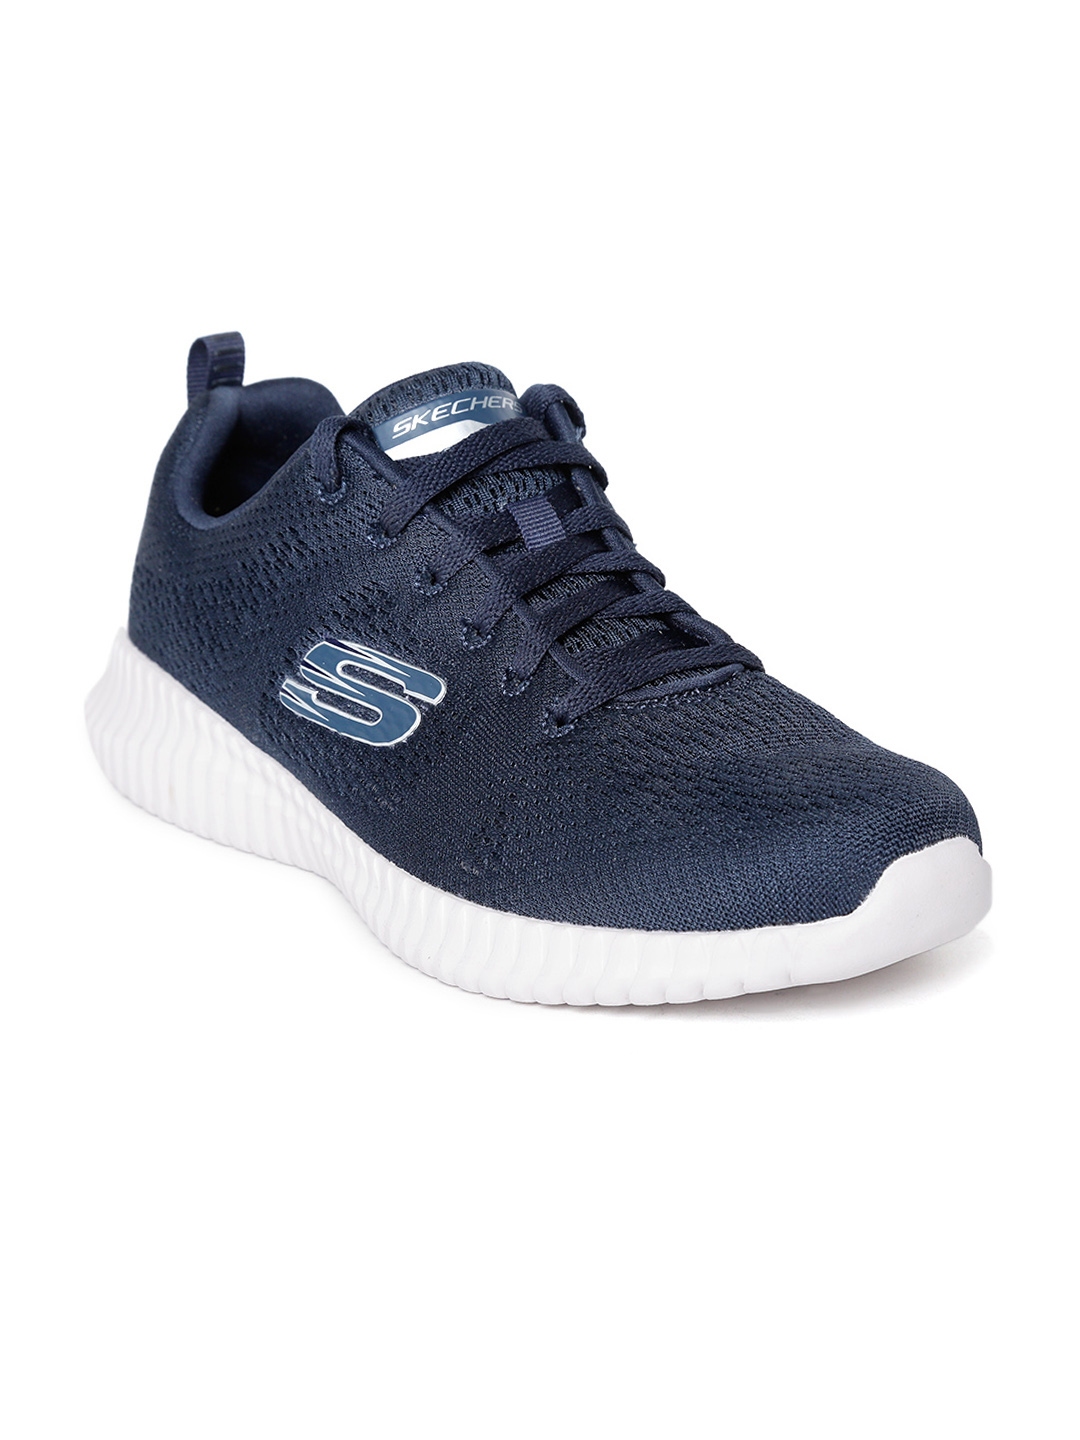 Buy Skechers Men Navy Blue Elite Flex Clear Leaf Sneakers - Casual ...